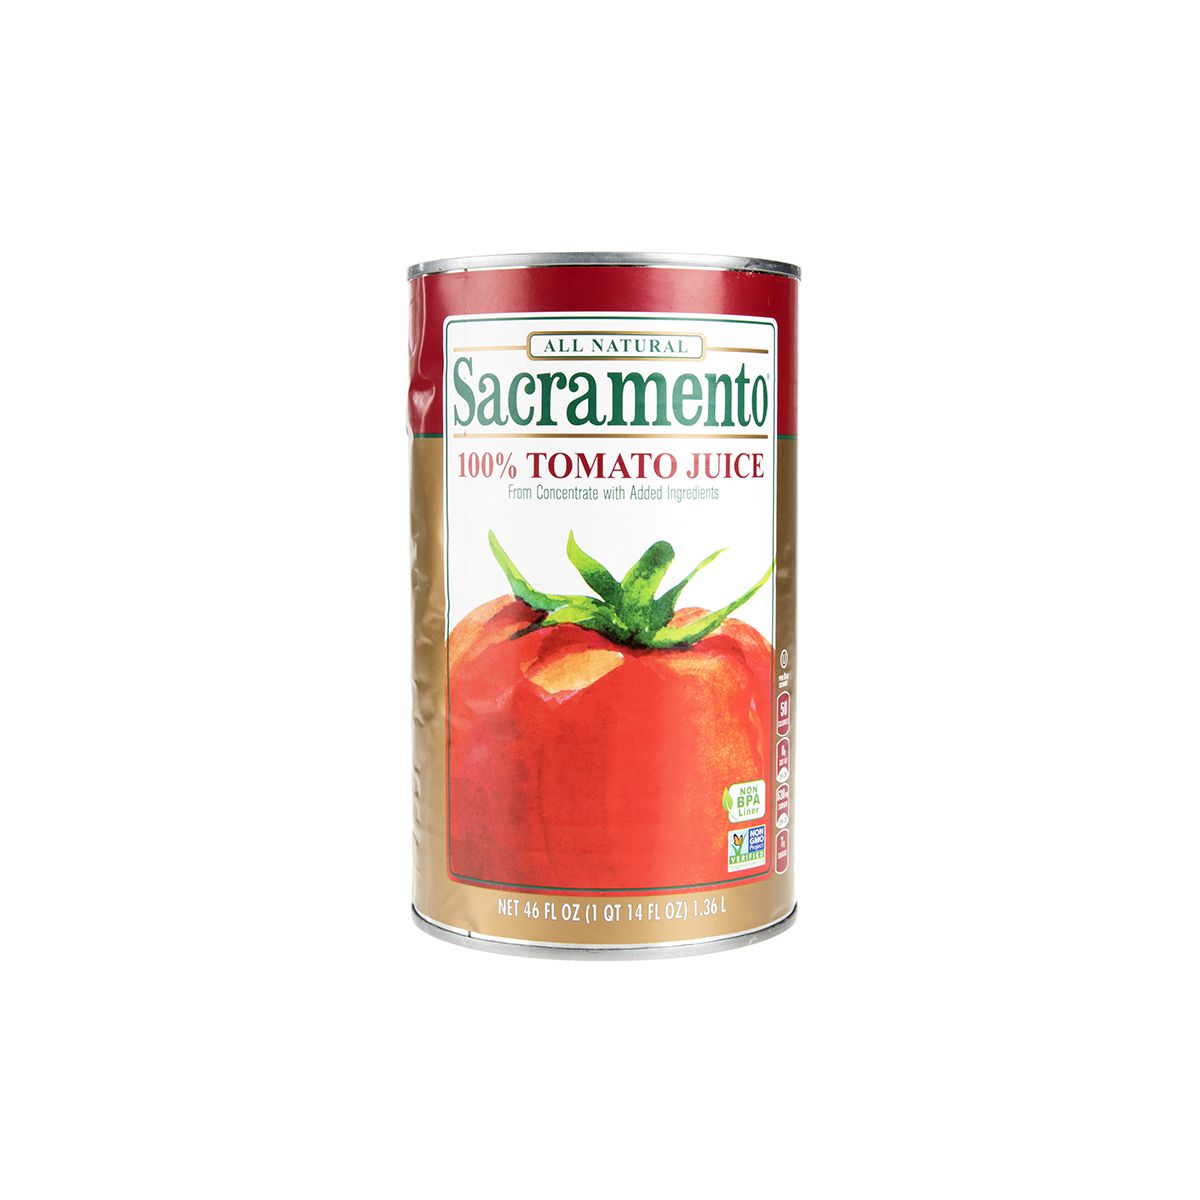 Sacramento Tomato Juice 46 OZ